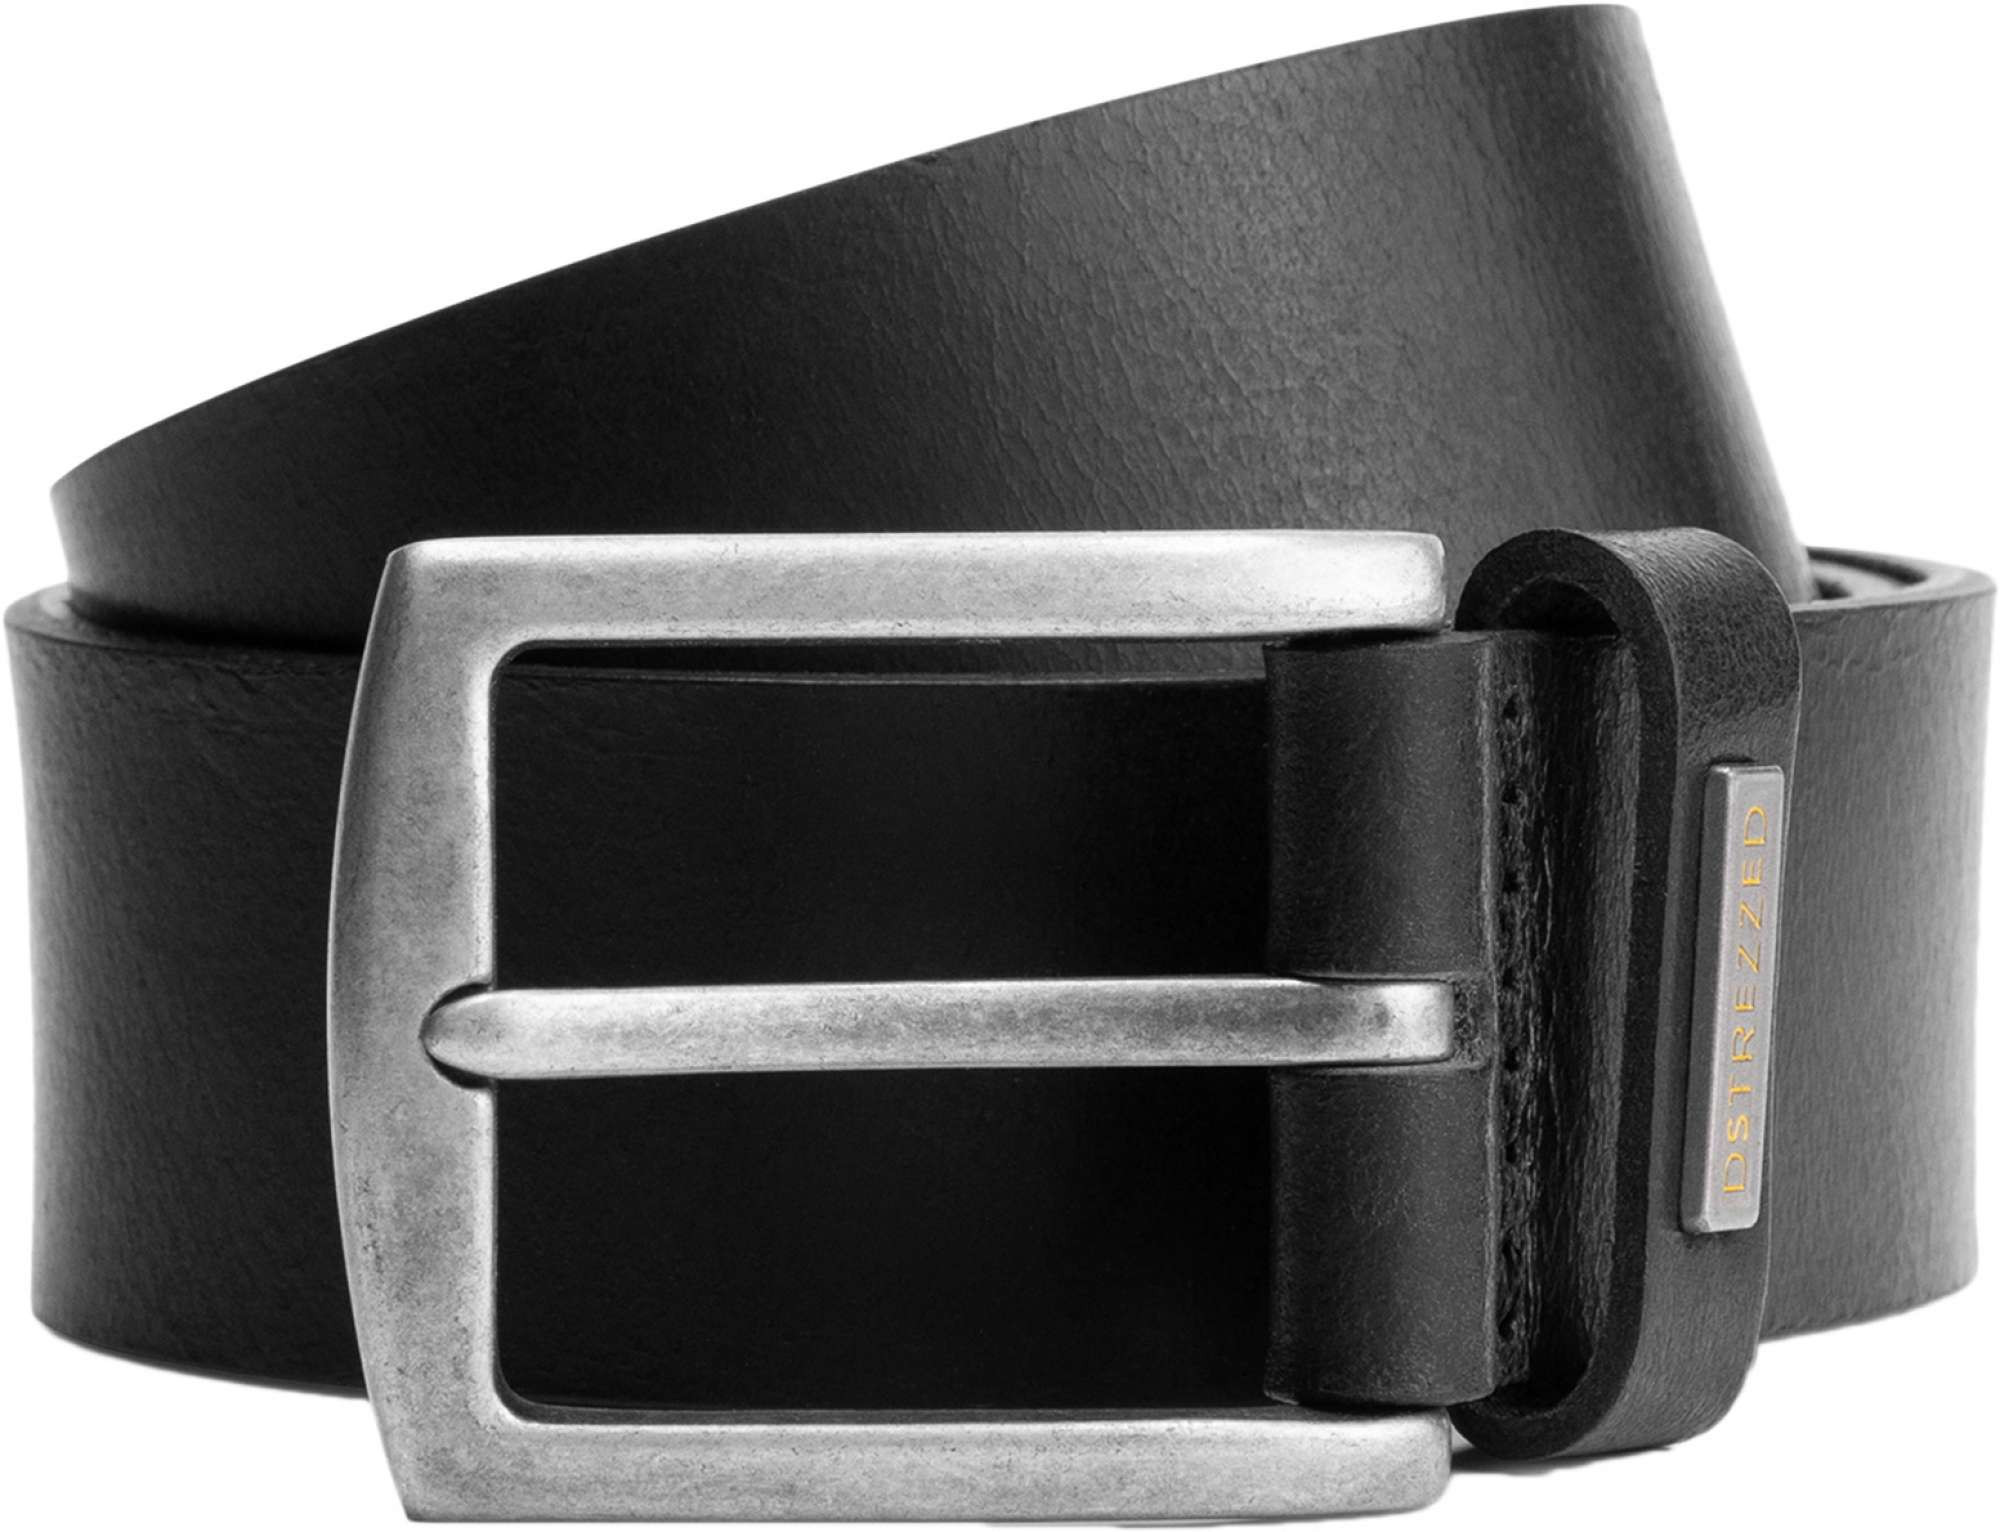 Afbeelding van Dstrezzed Belt leather